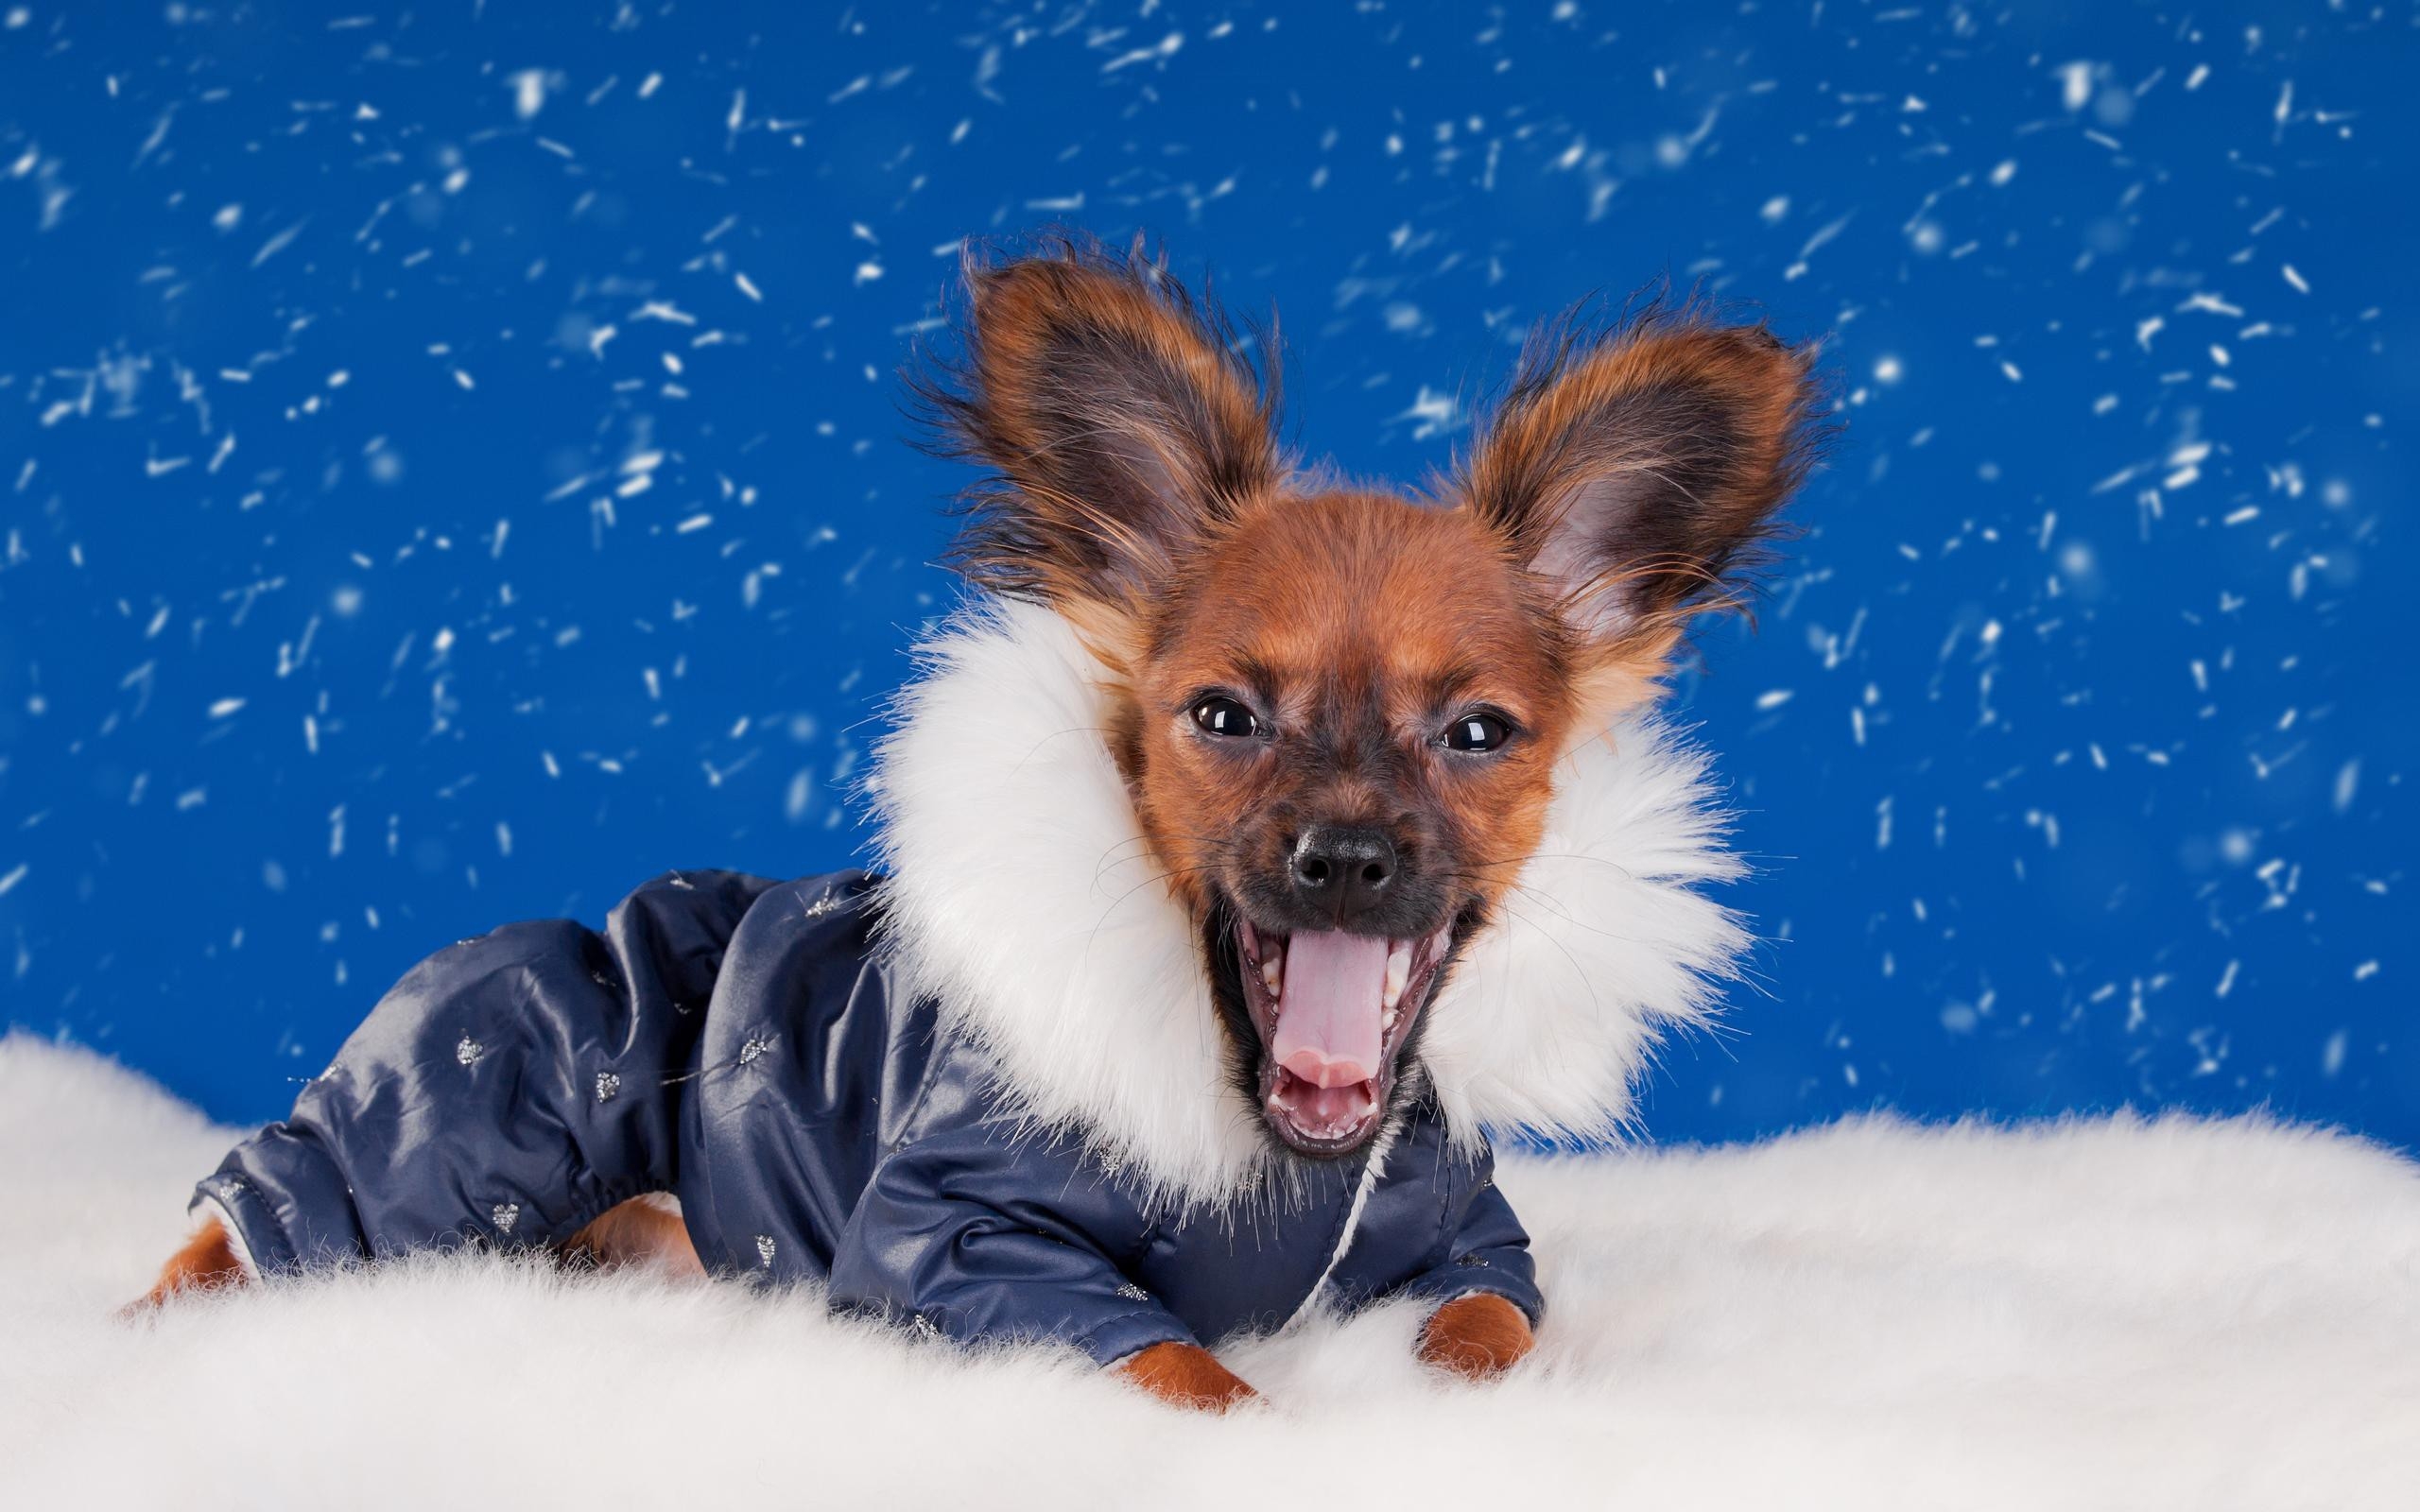 一只穿着冬季工作服的小狗躺在洁白的雪地里